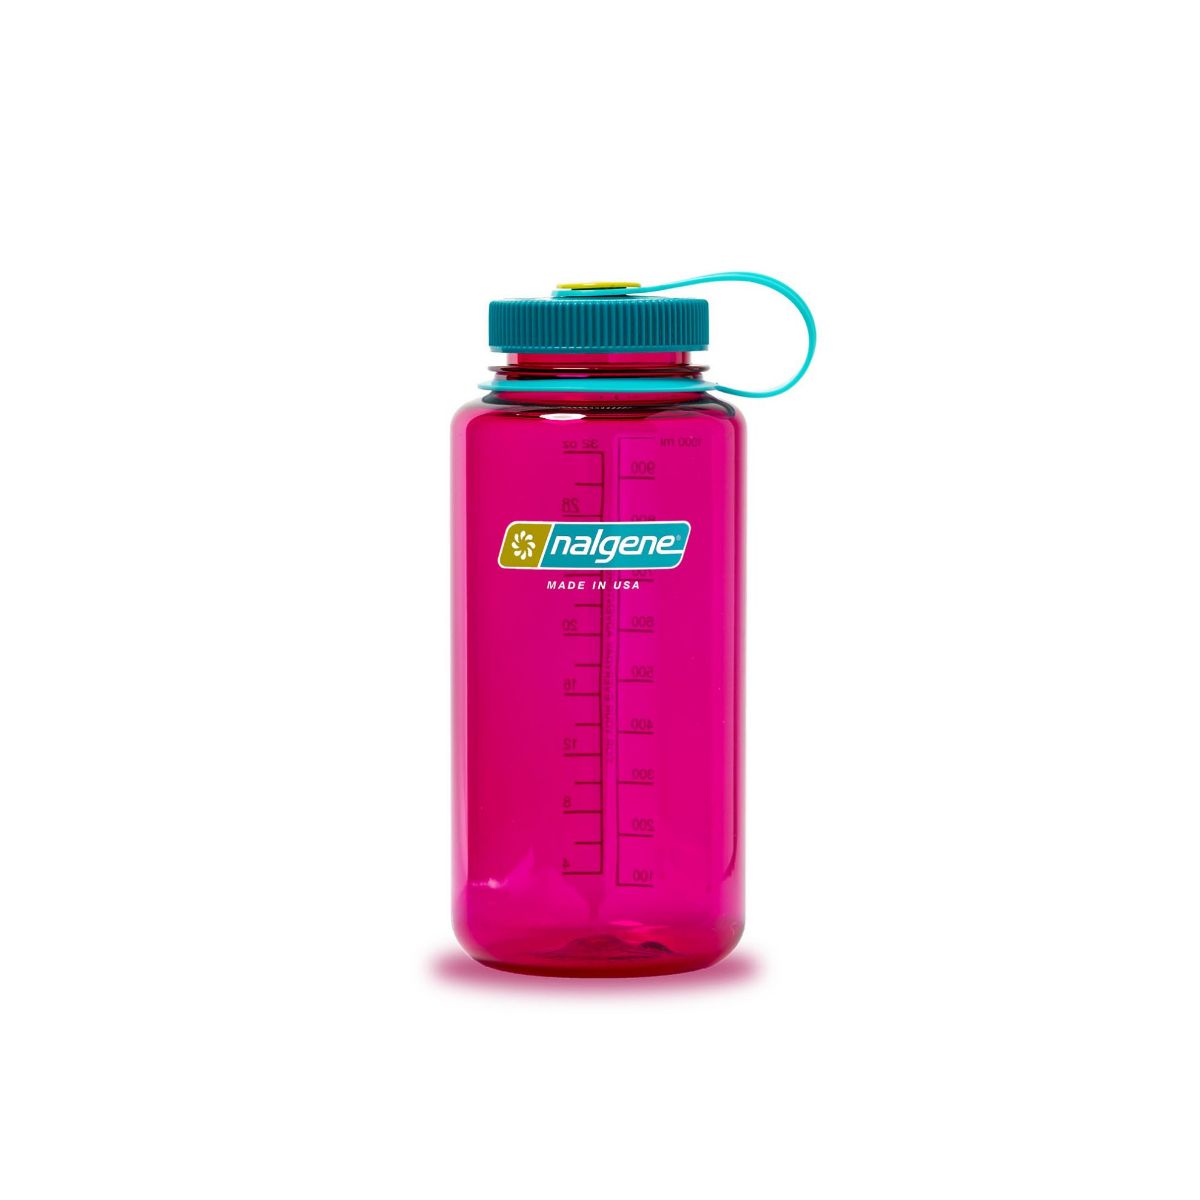 rosa drikkeflaske i BPA-fri plast med stor drikkeåpning.